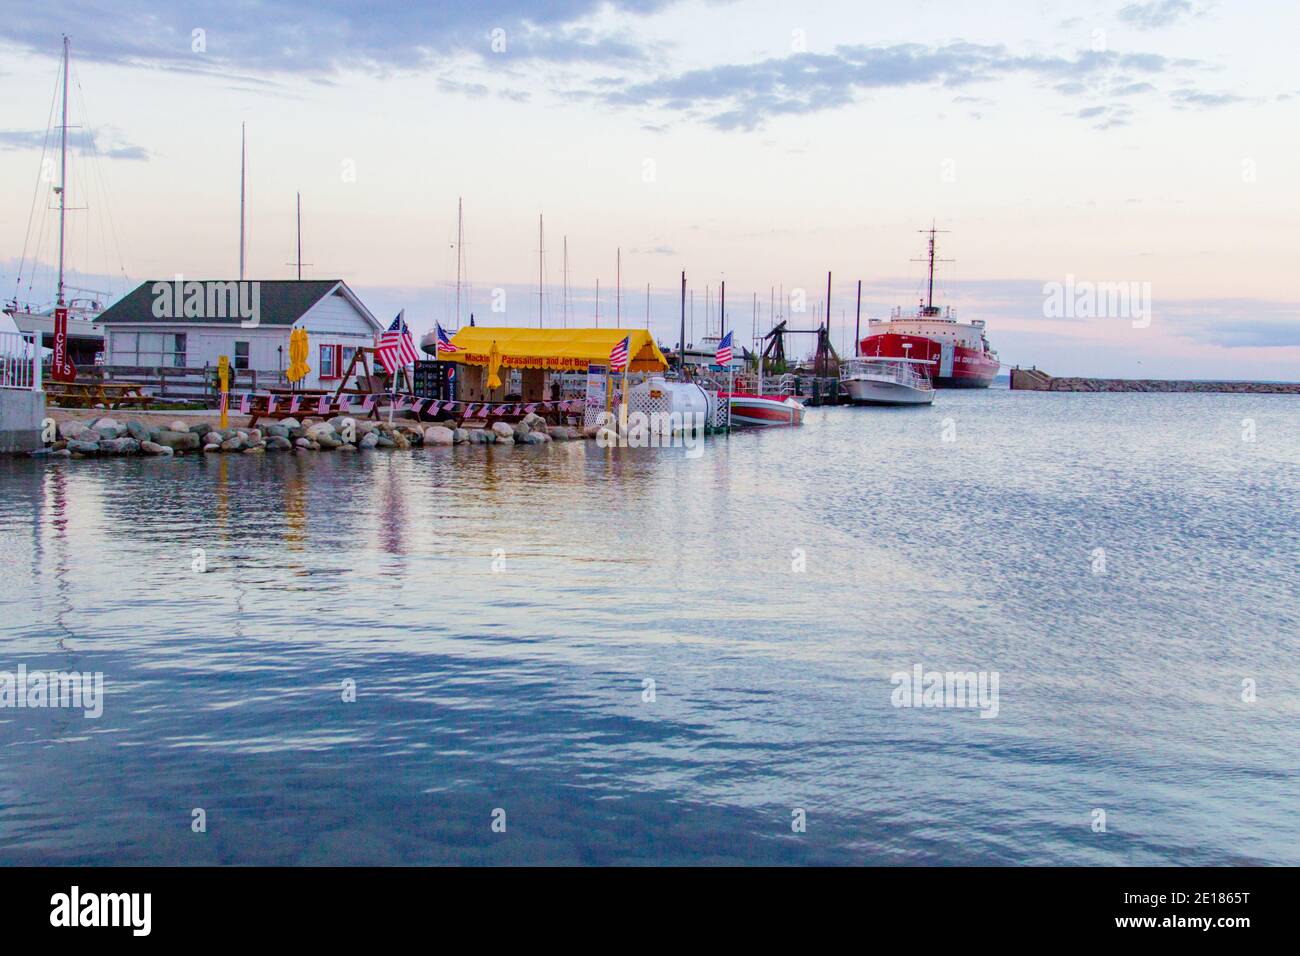 Mackinaw City, Michigan, EE.UU. - 29 de mayo de 2020: Barcos recreativos y veleros bordean el puerto deportivo y los muelles del puerto al atardecer en el pequeño pueblo costero Foto de stock